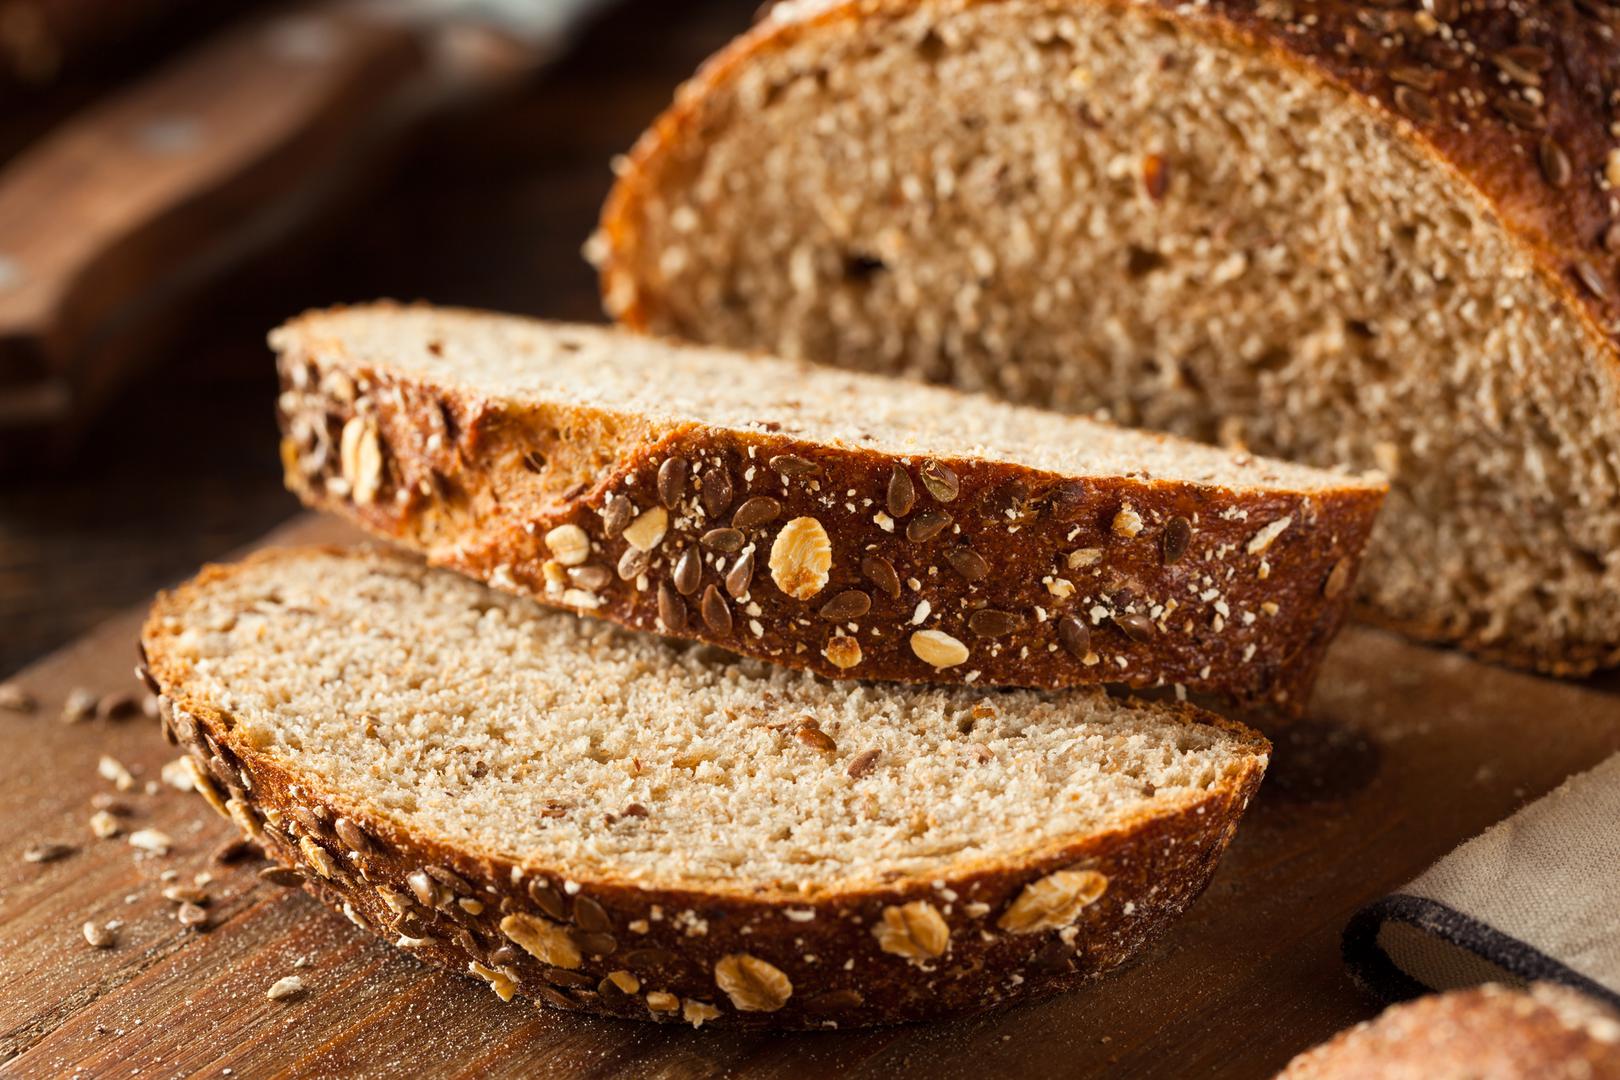 KRUH S CJELOVITIM ŽITARICAMA - Prema studiji Penn Statea, pojedinci koji su jeli kruh od cjelovitih žitarica dok su bili na prehrani s nižim unosom kalorija tijekom 12 tjedana izgubili su znatno više masnoća oko trbuha. 